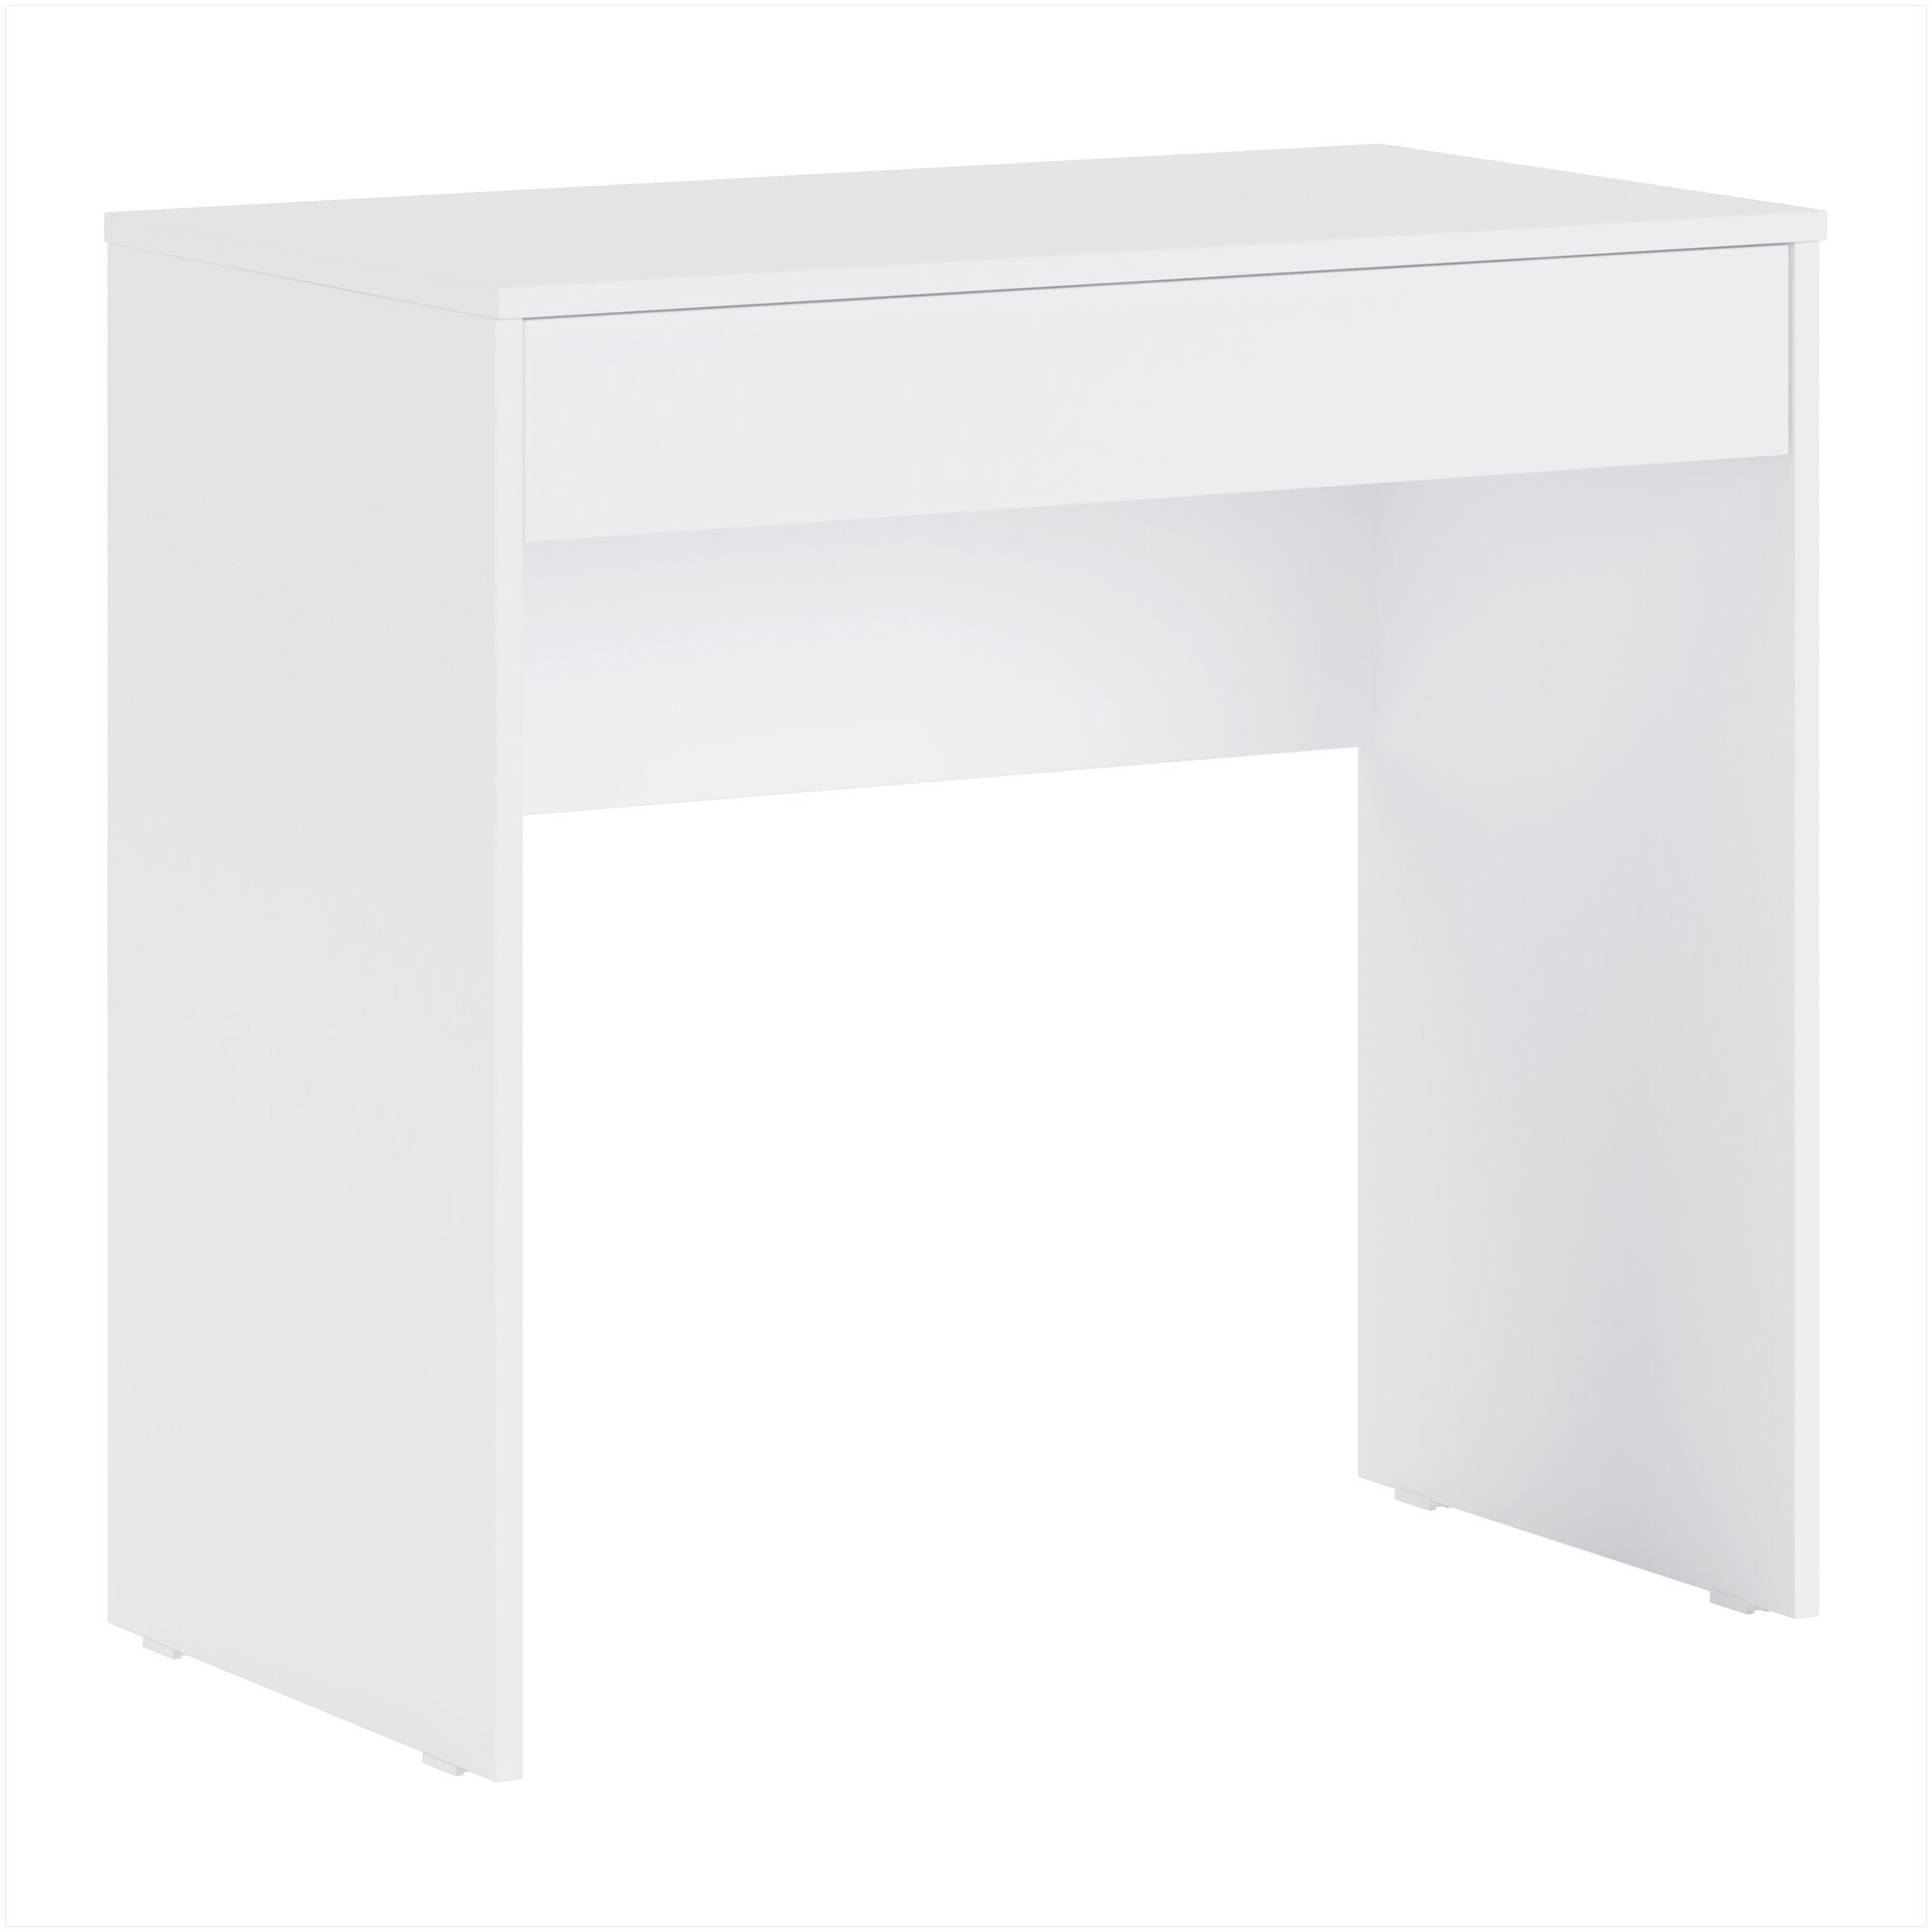 Стол письменный с ящиком Лайт 1, Белый, Ш80хВ75.5хГ45 см.